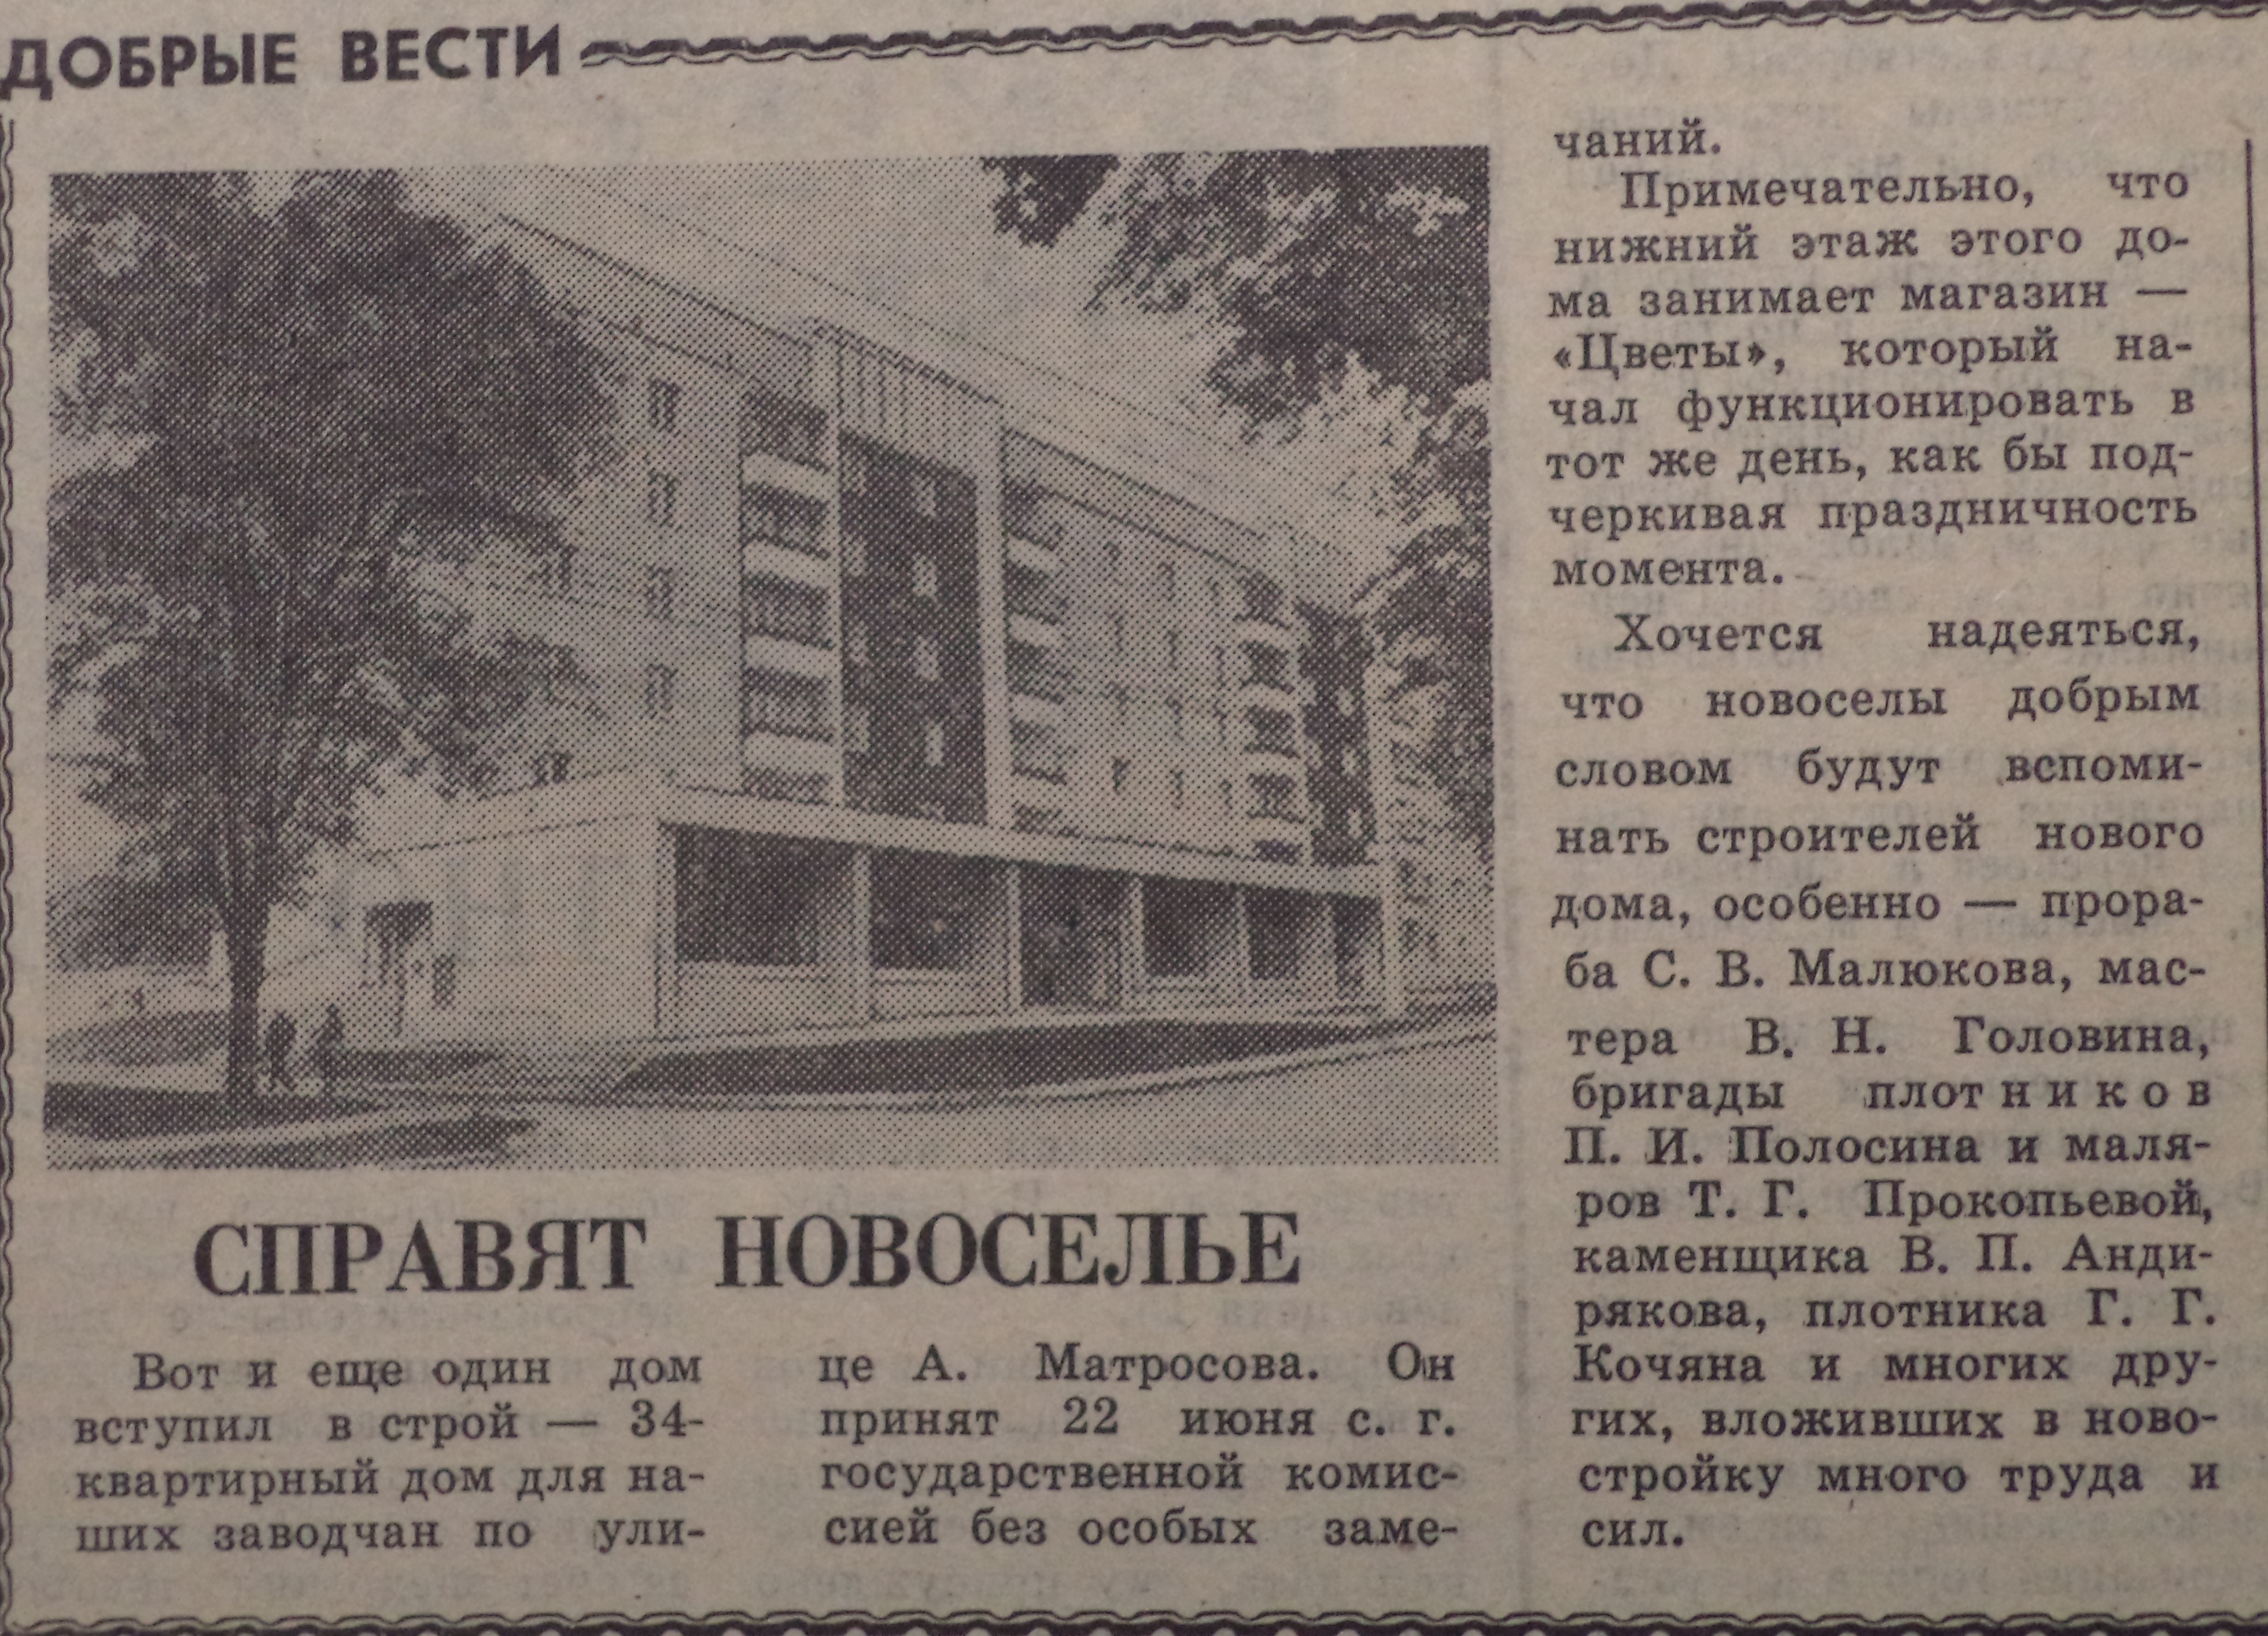 ФОТО 28-АМатросова-Передовик-1988-28 июня